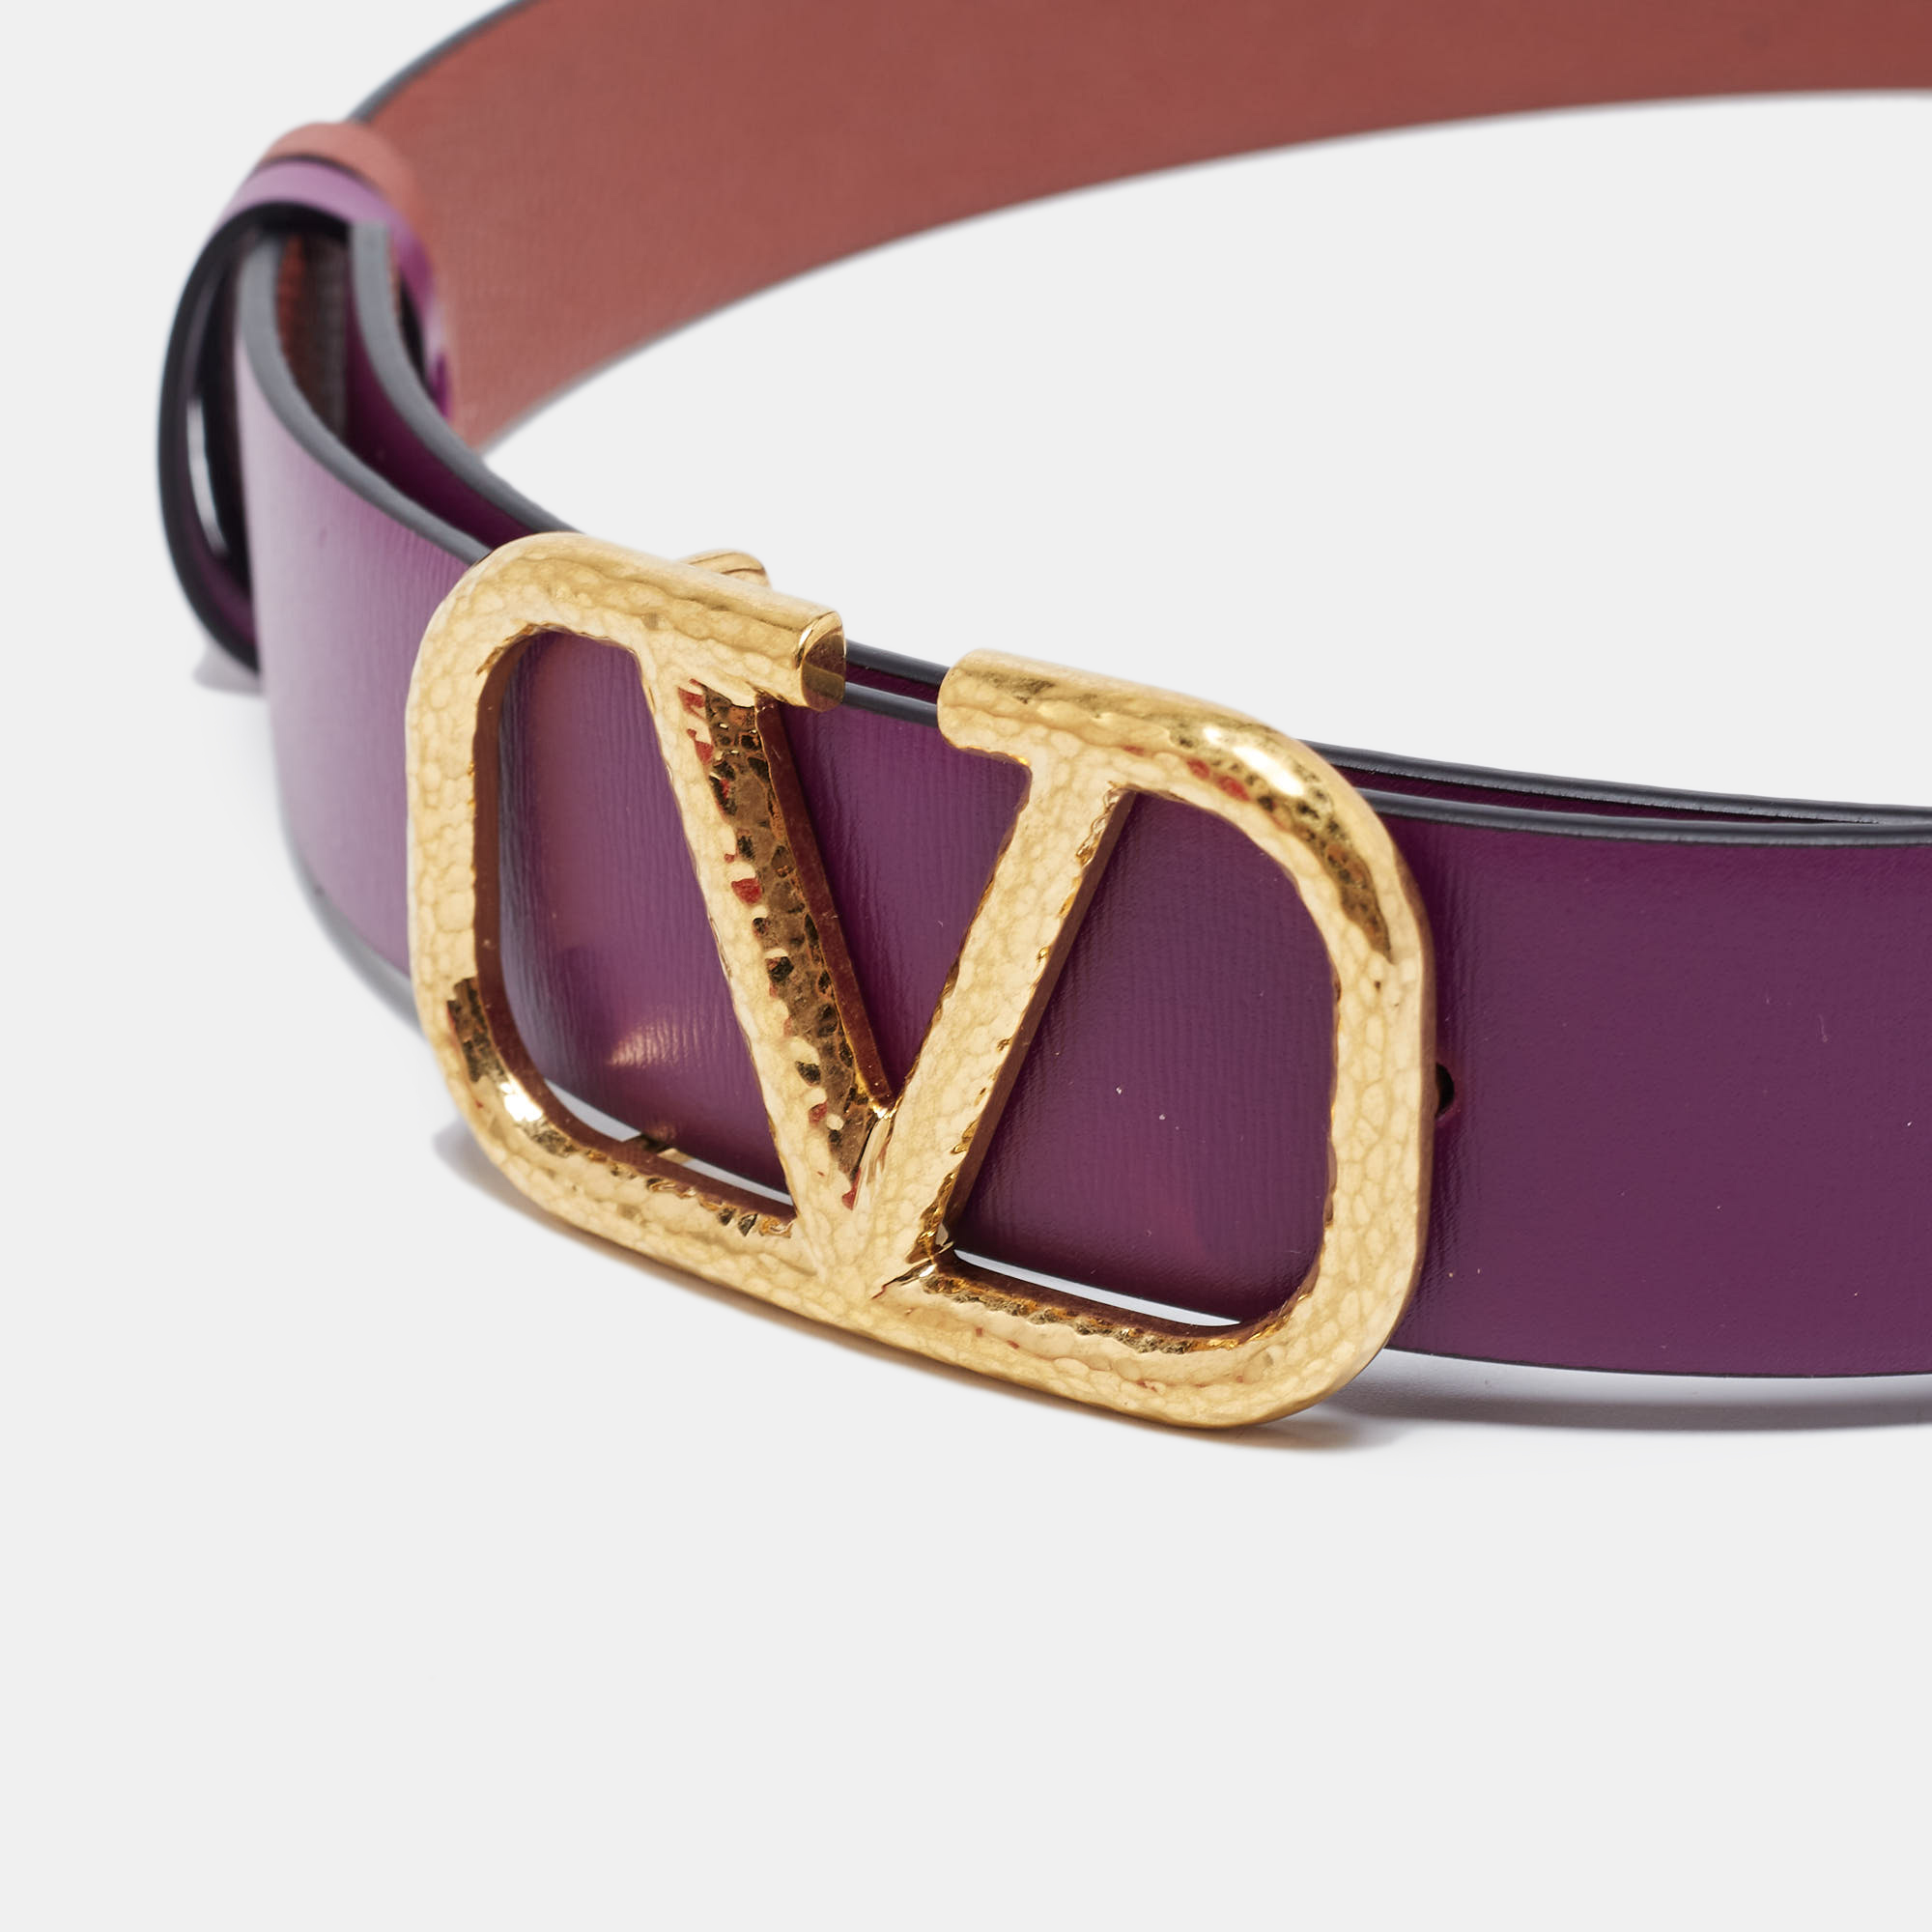 

Valentino Purple/Amarant Leather VLogo Reversible Belt